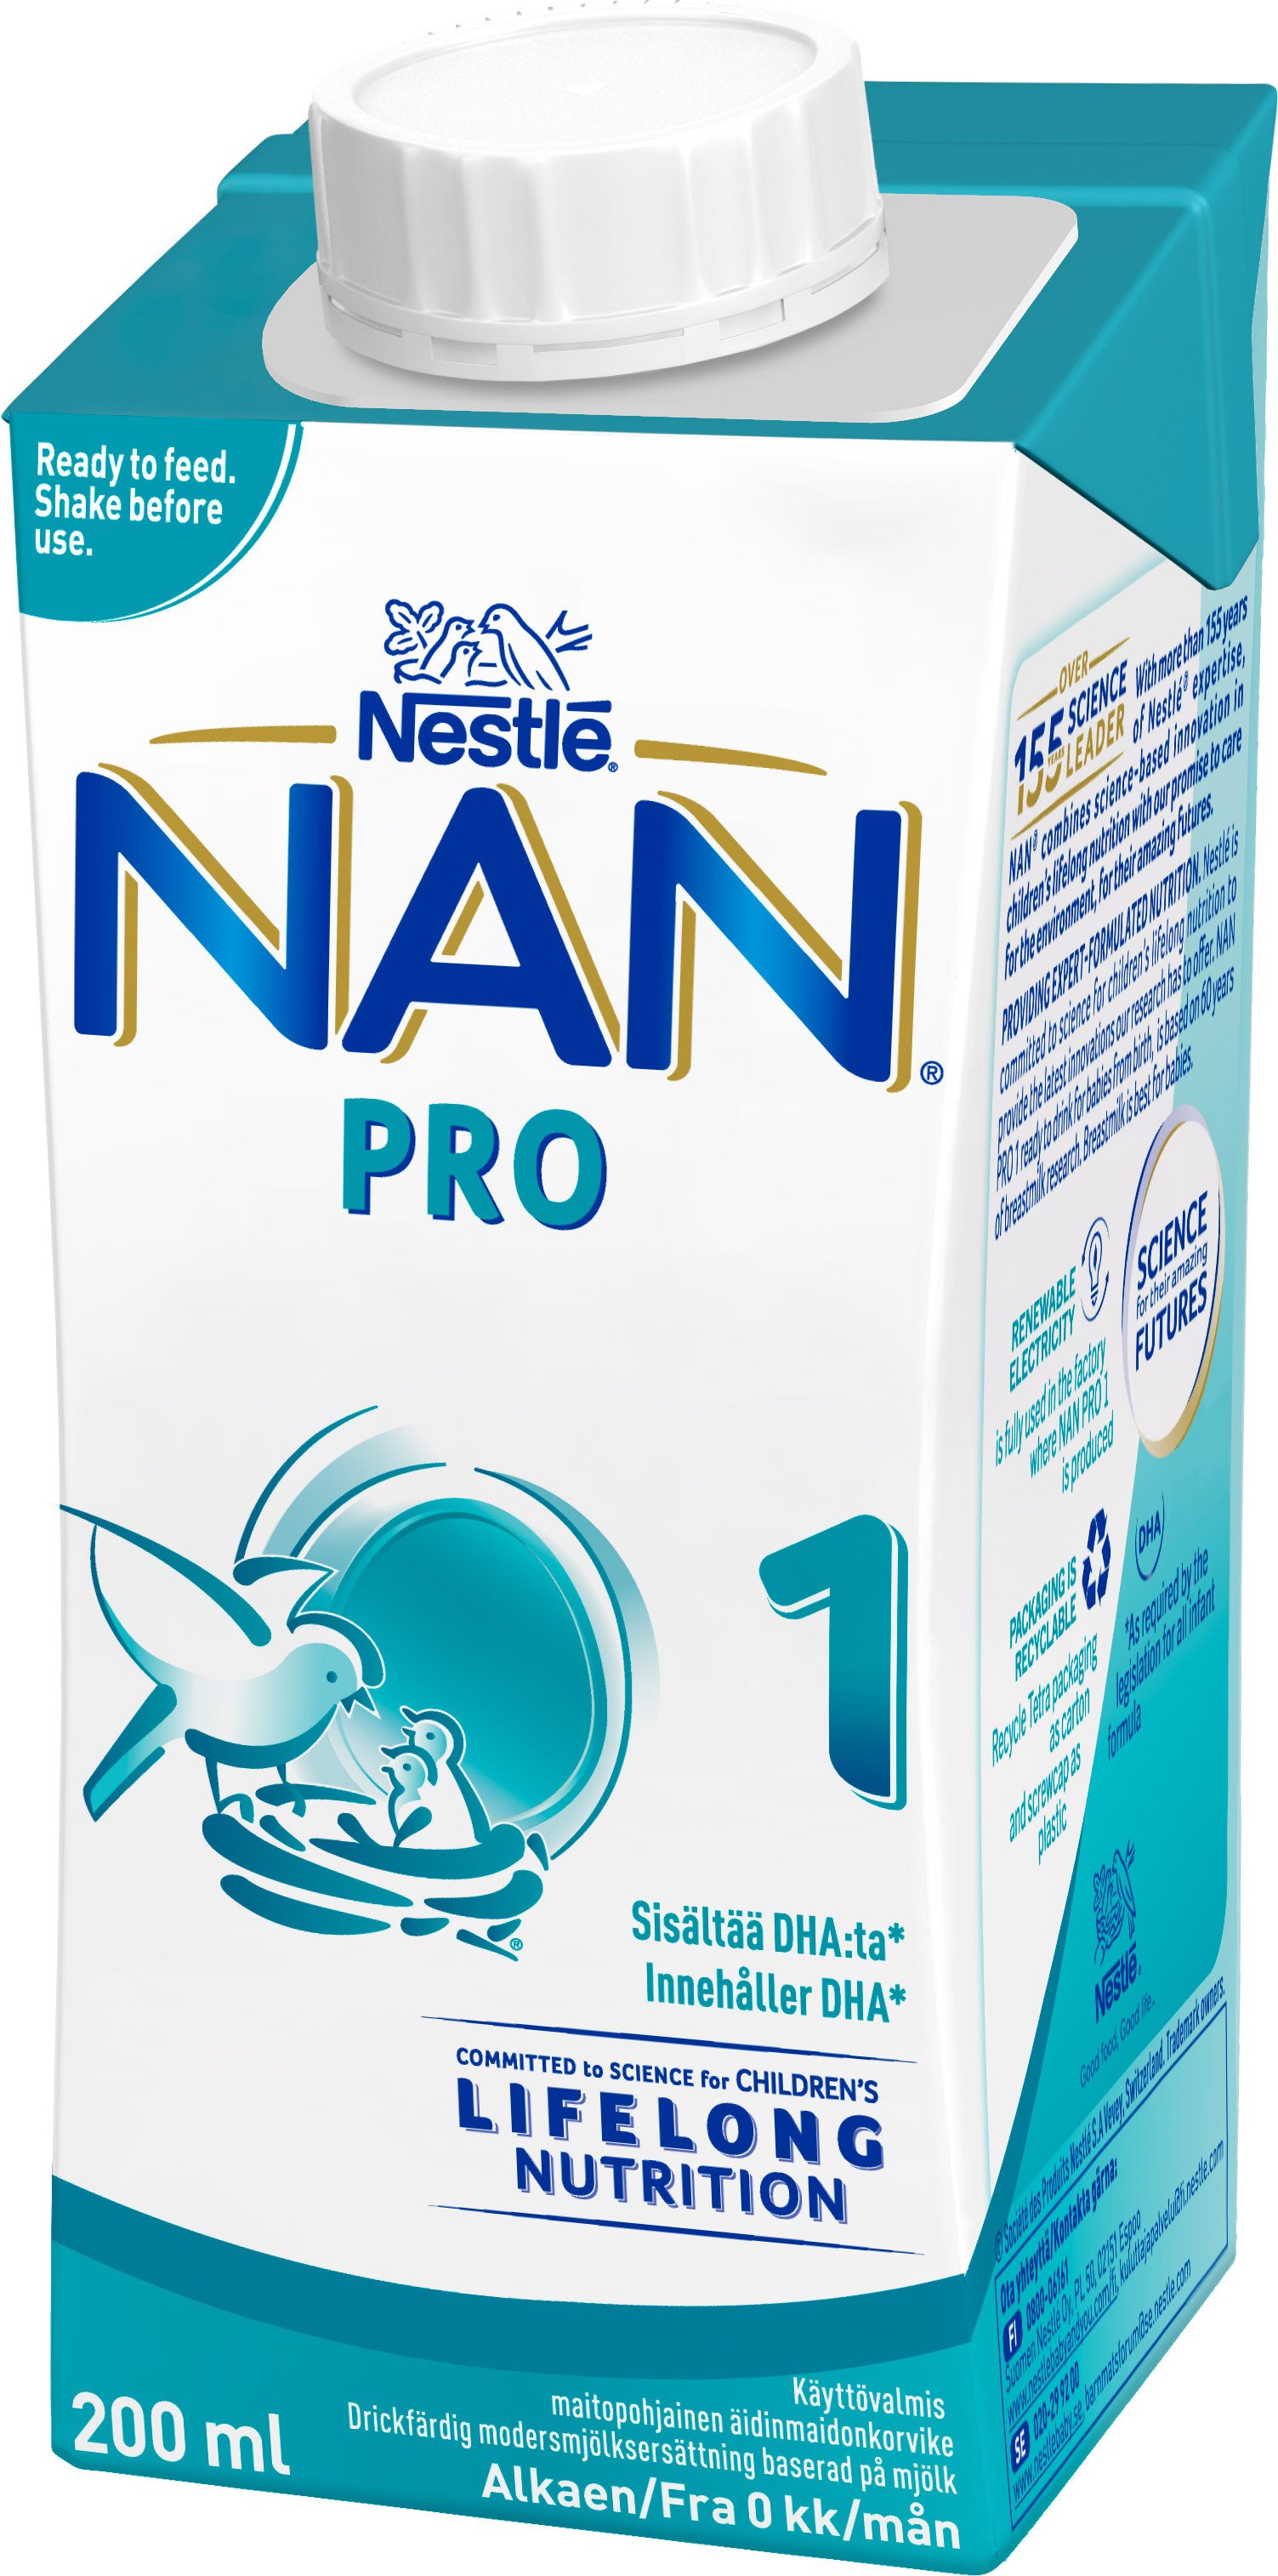 Nestlé NAN 1 PRO 200 ml